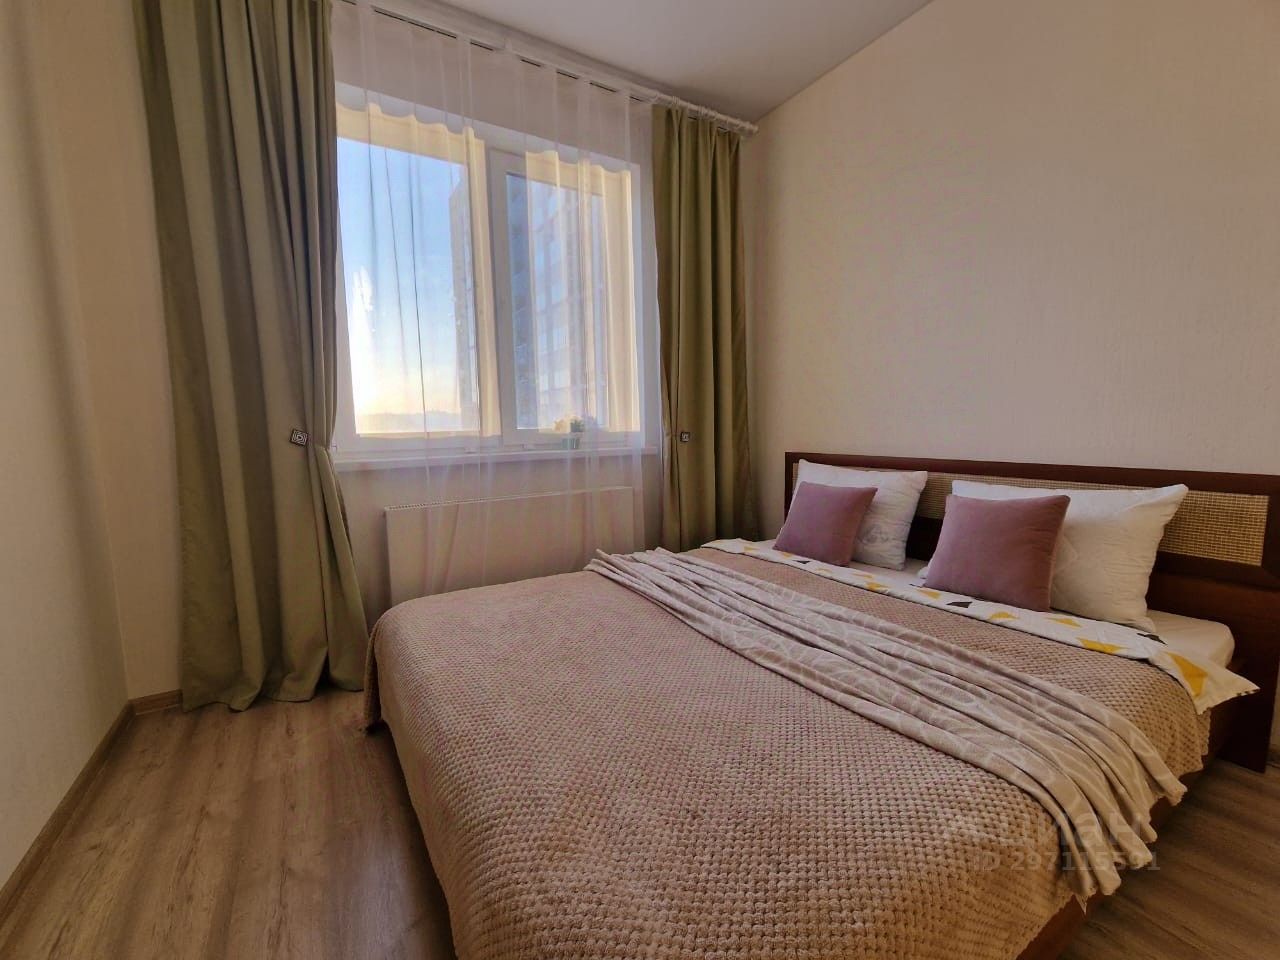 Уютная квартира с просторной спальней, светлыми стенами и большими окнами. Идеально для комфортного проживания в Екатеринбурге.